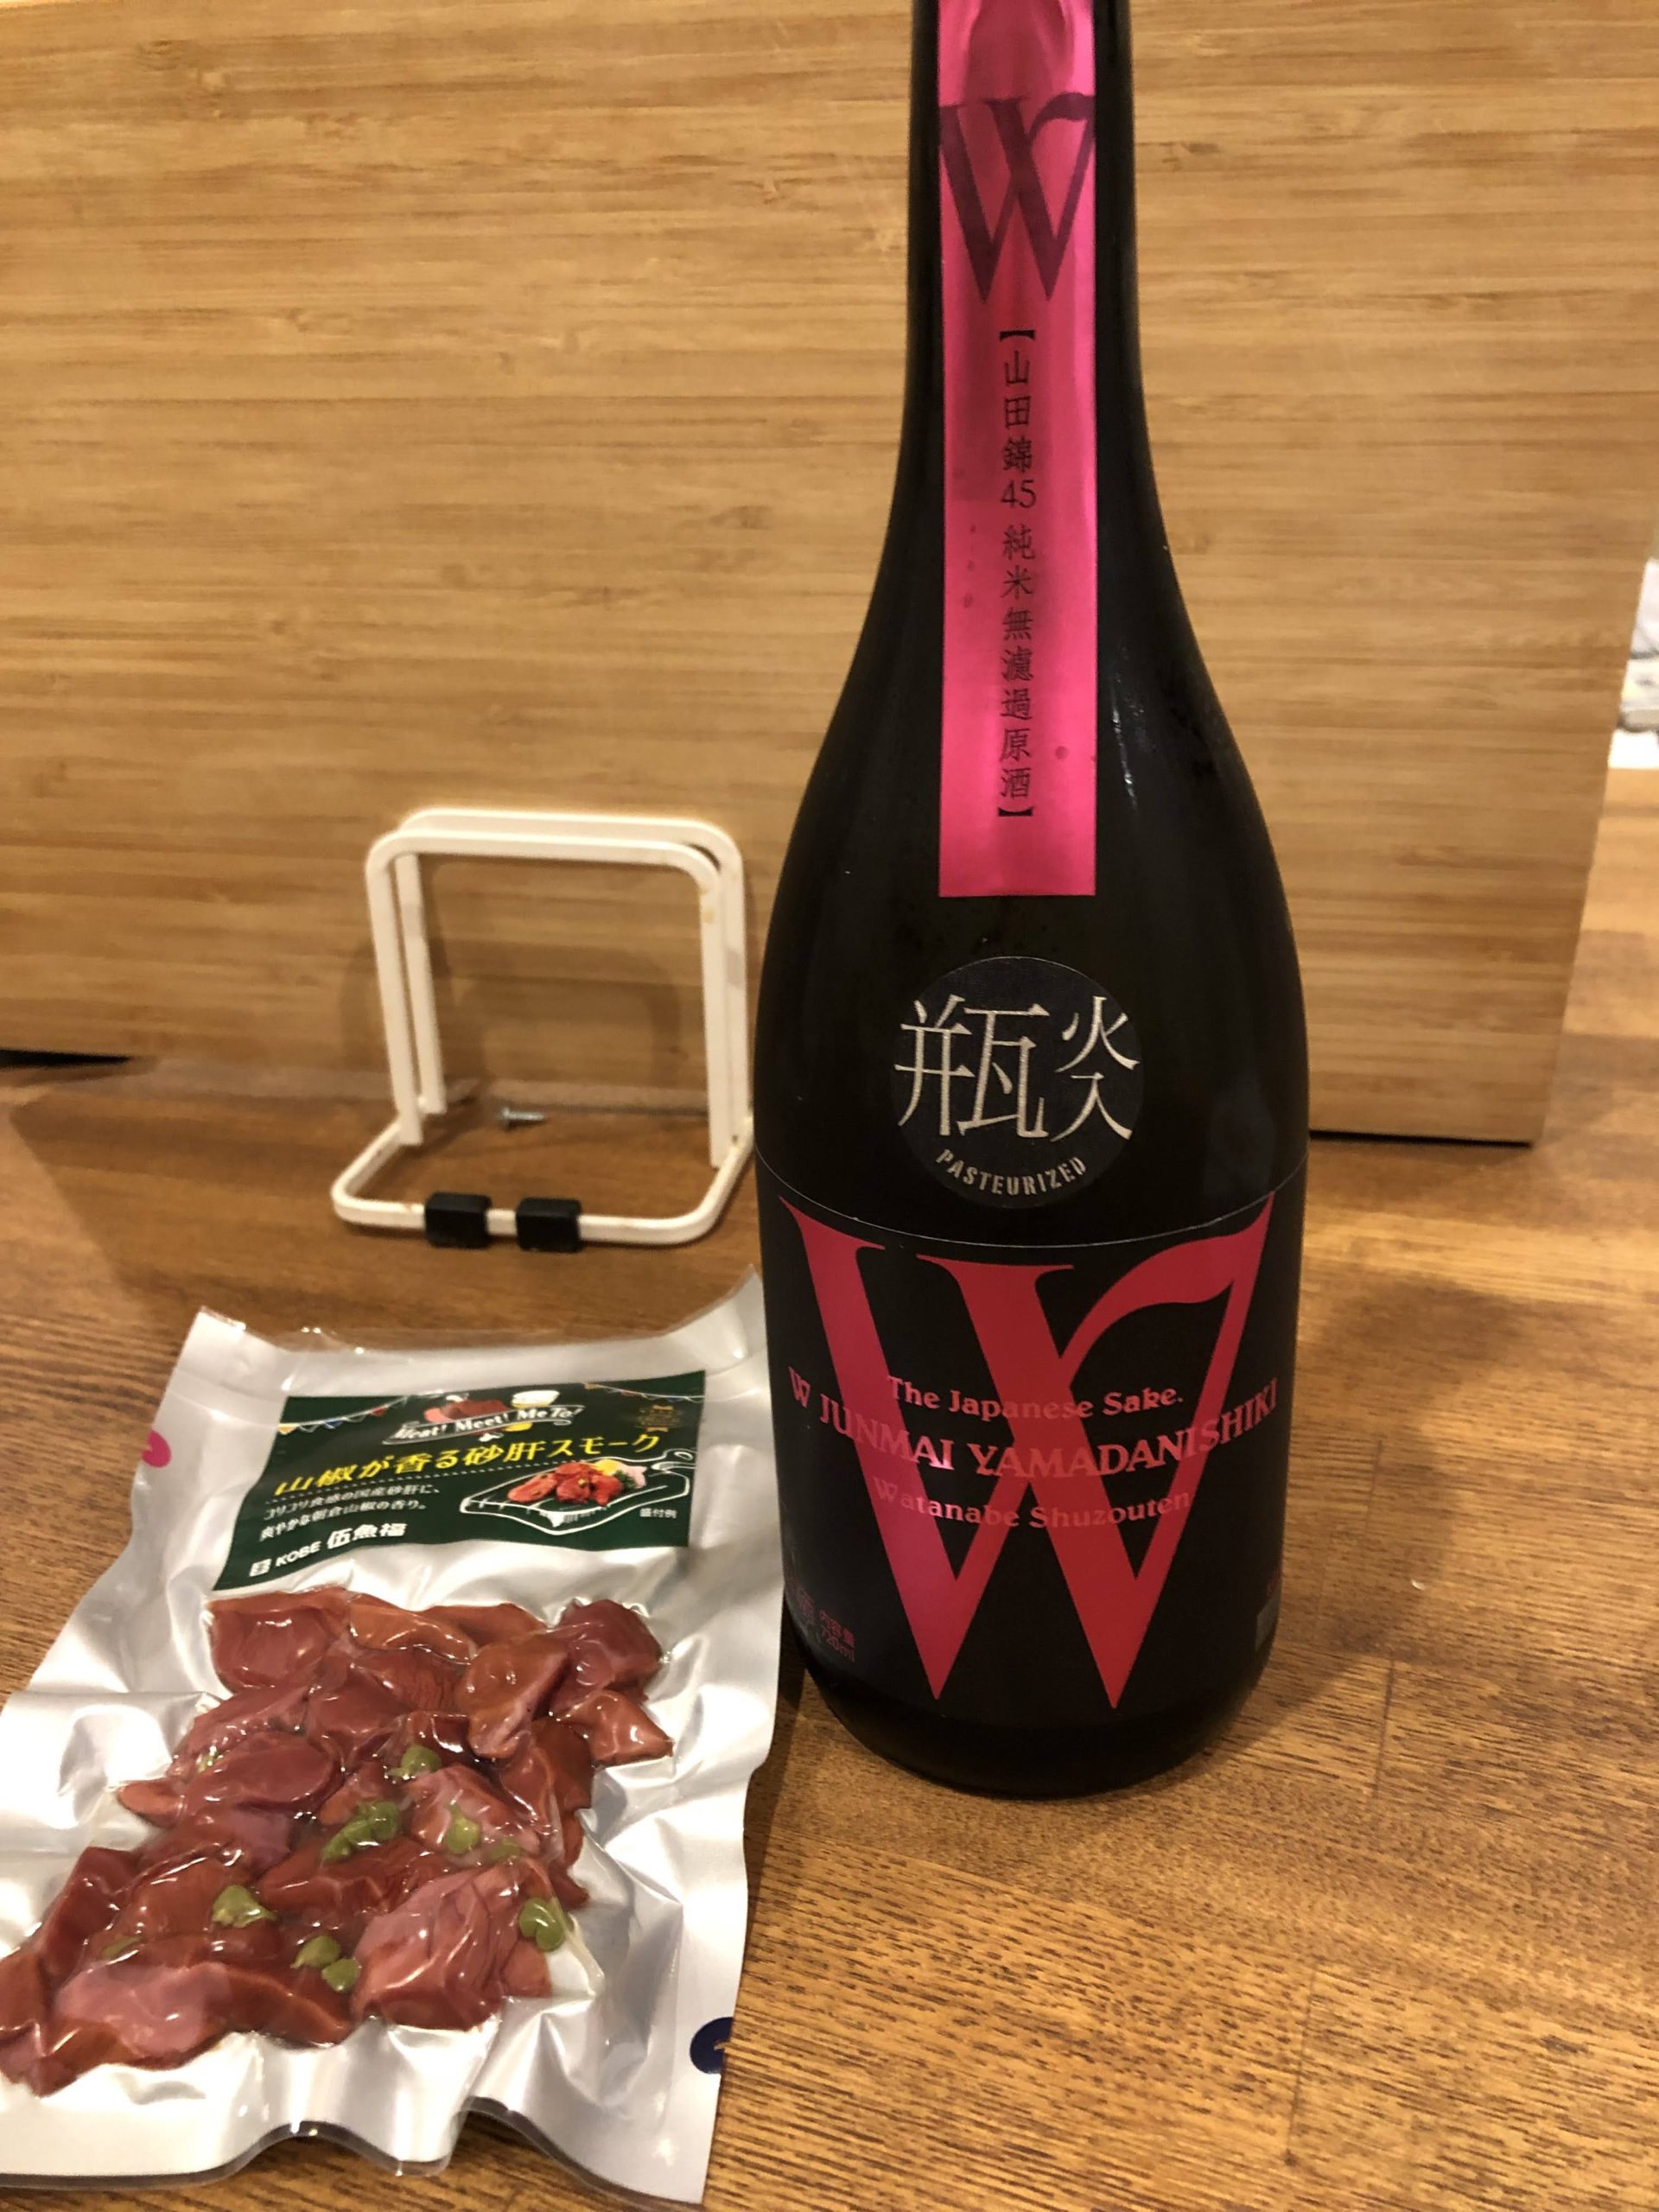 日本で一番笑顔溢れる蔵 蓬莱渡辺酒造 W